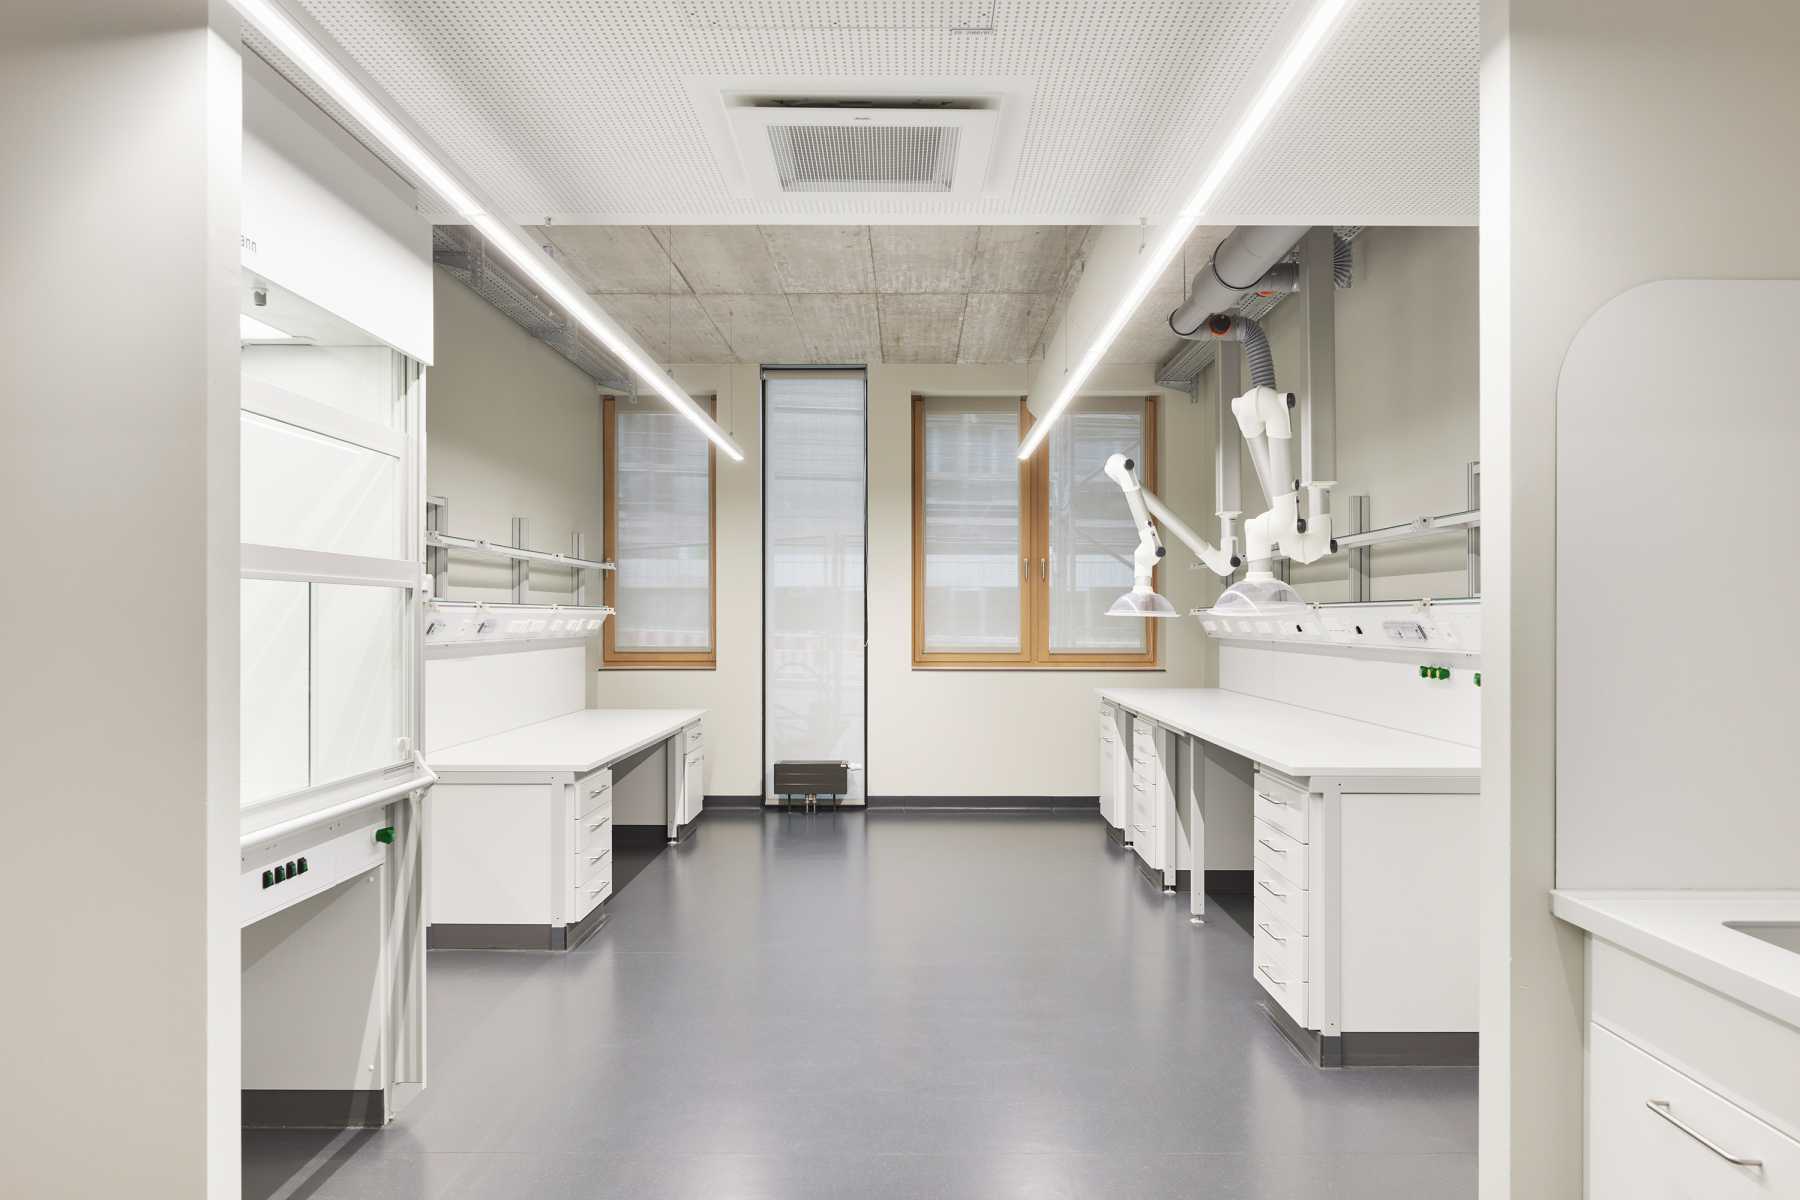 Einweihung unseres neuen Forschungsgebäudes- ein Meilenstein in Architektur und Medizin: Wie wir die Zukunft mitgestalten ({project_images:field_row_count})